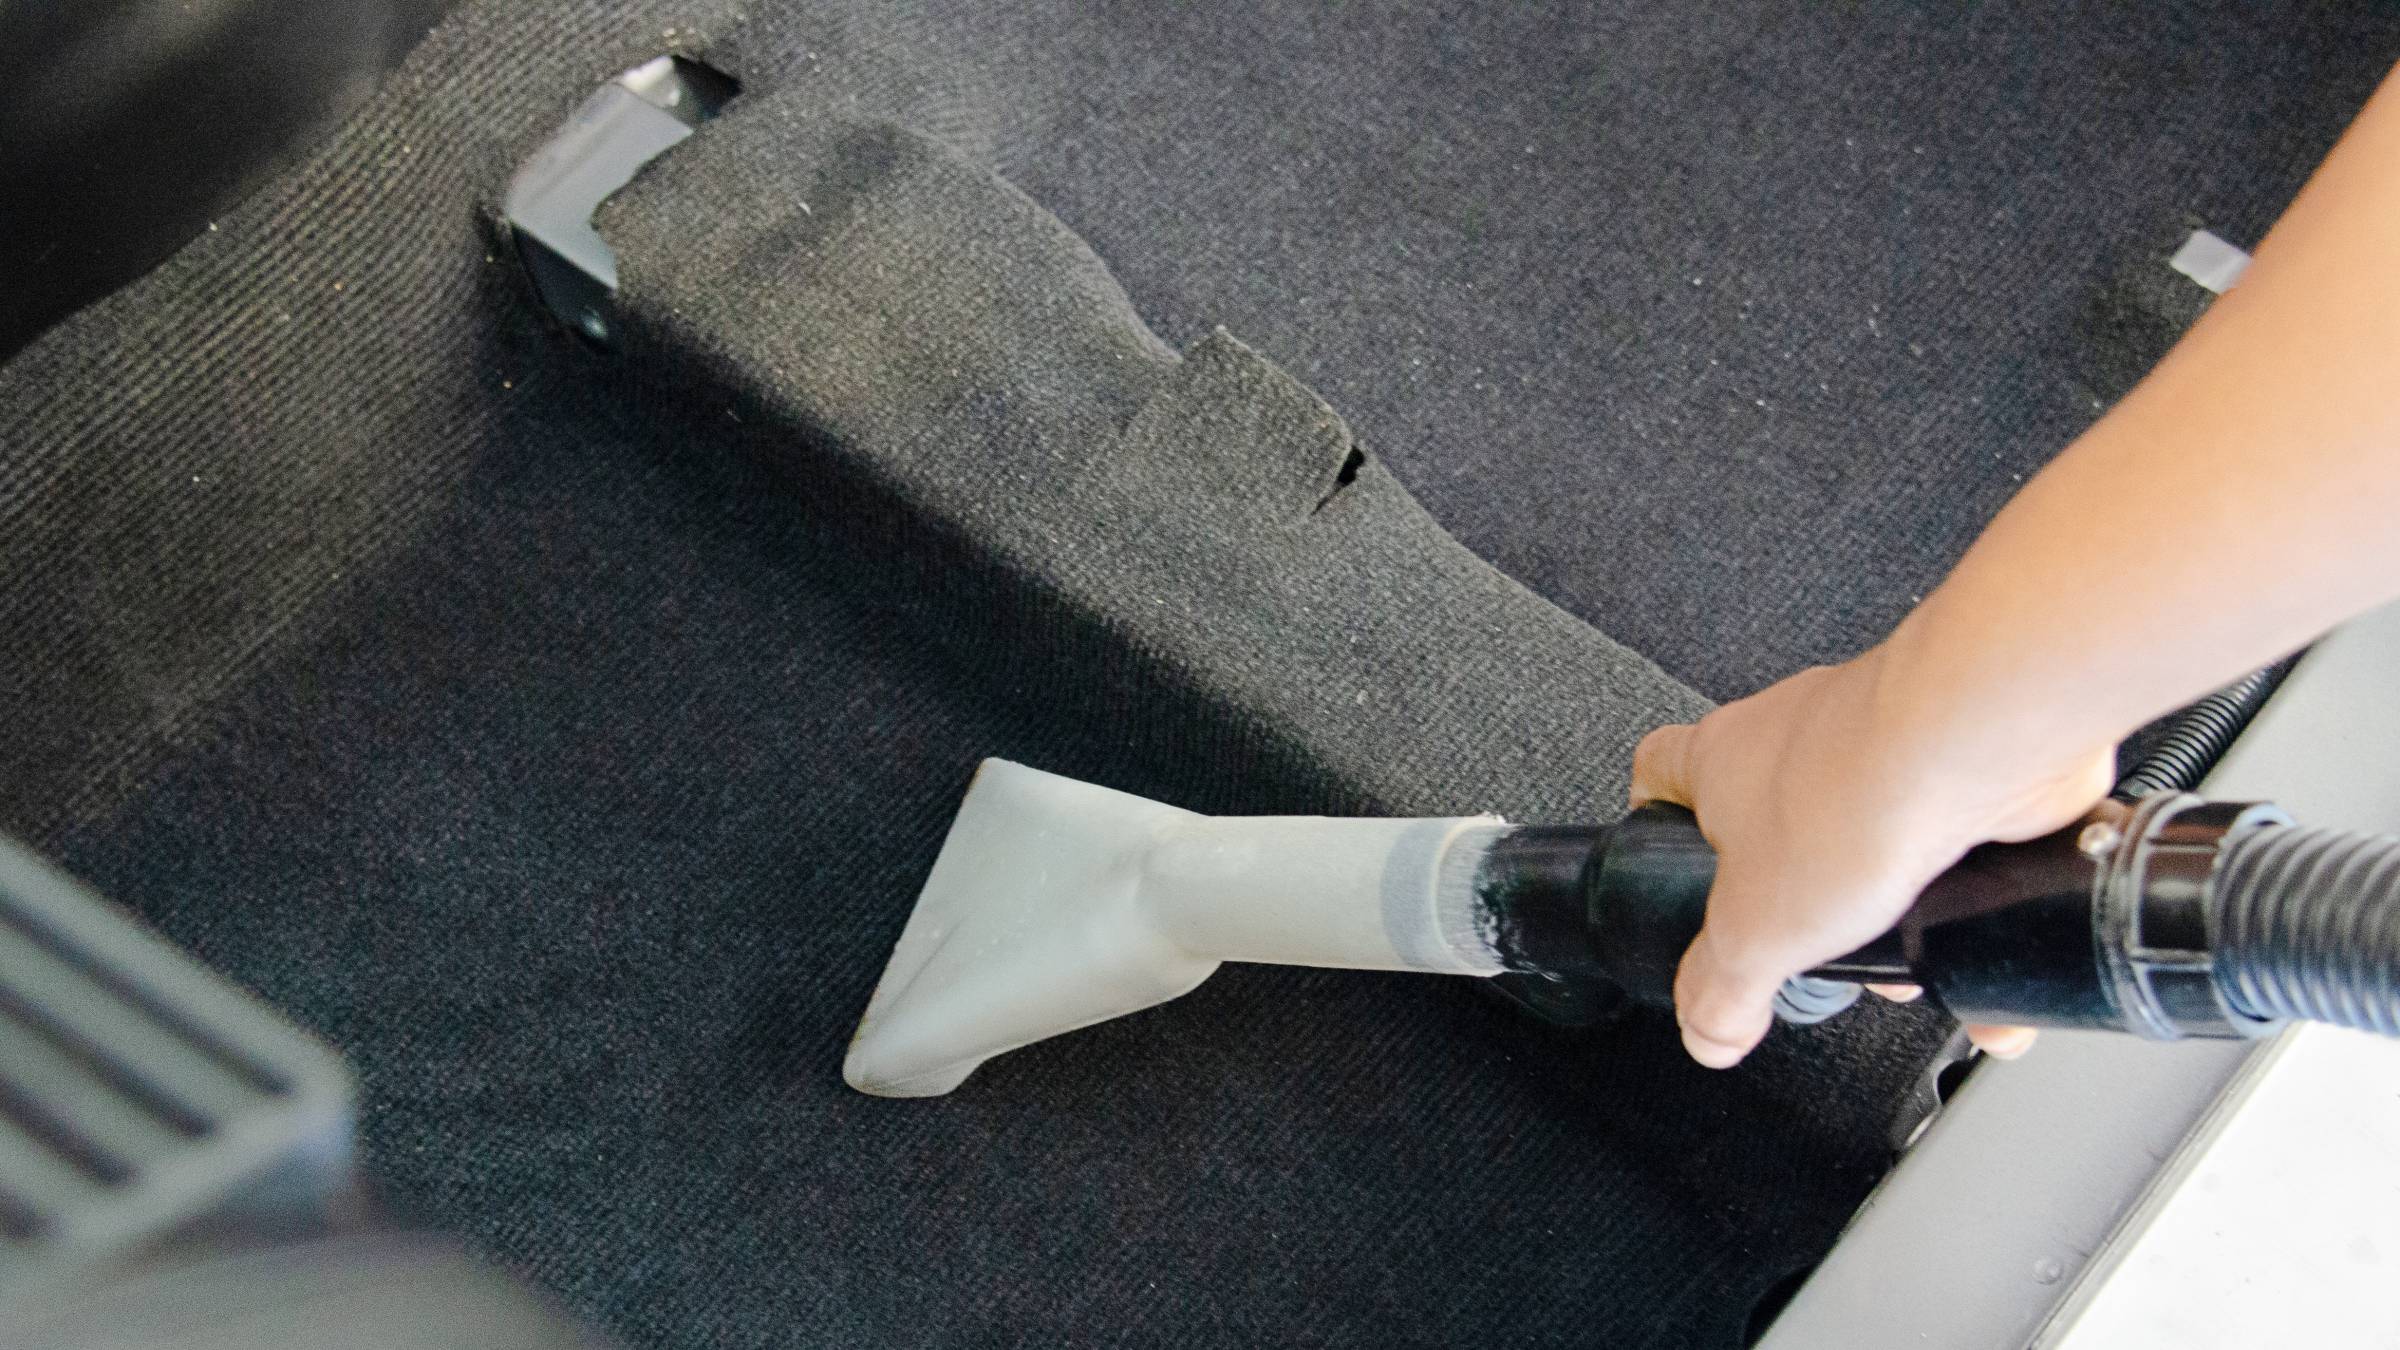 a person vacuuming a car carpet